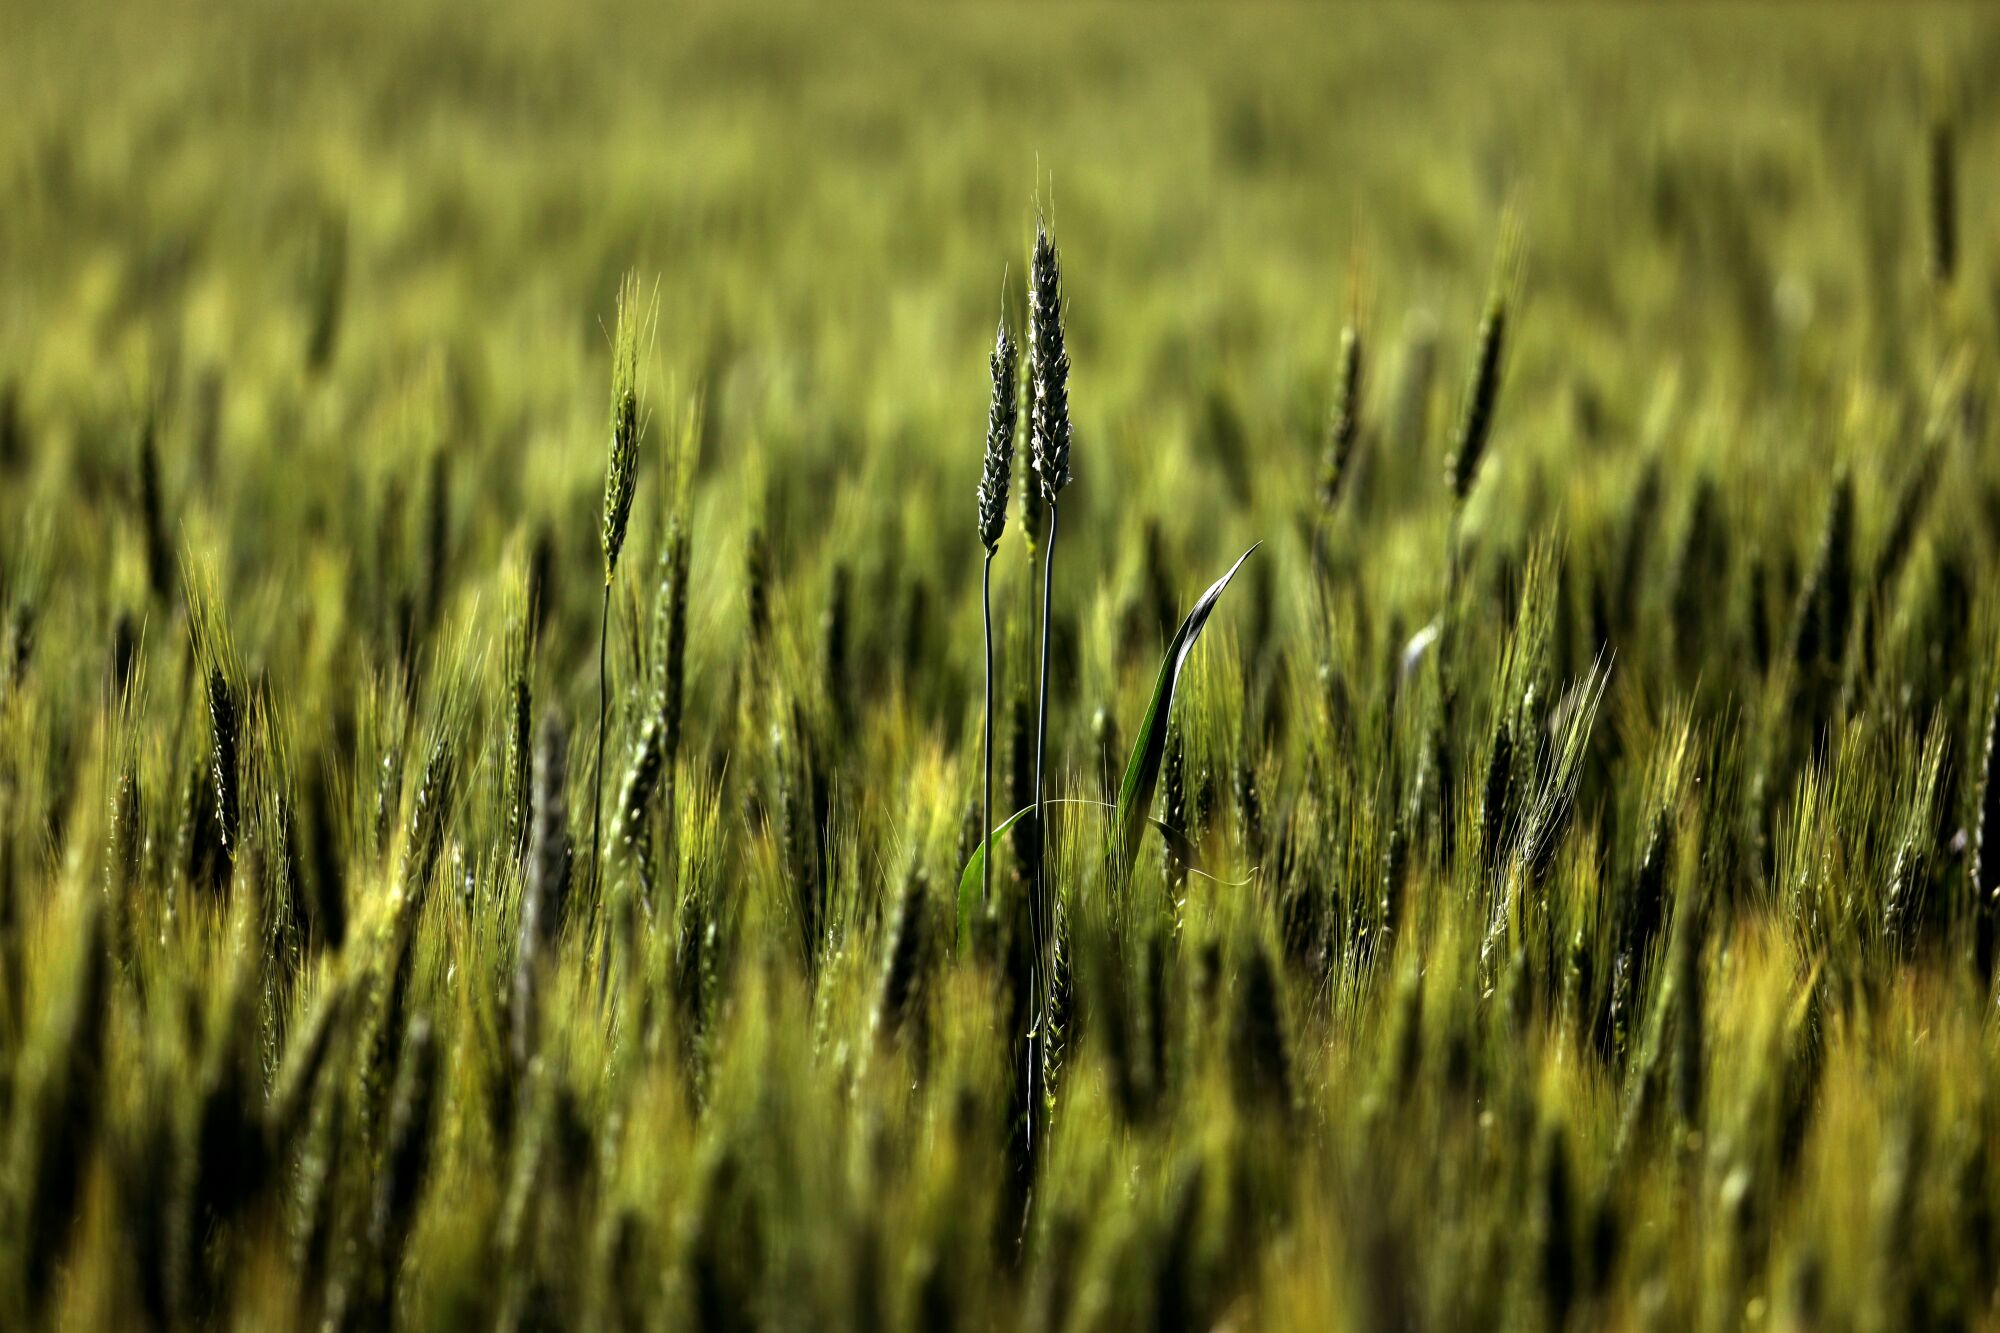 Wheat fields in Hanford.